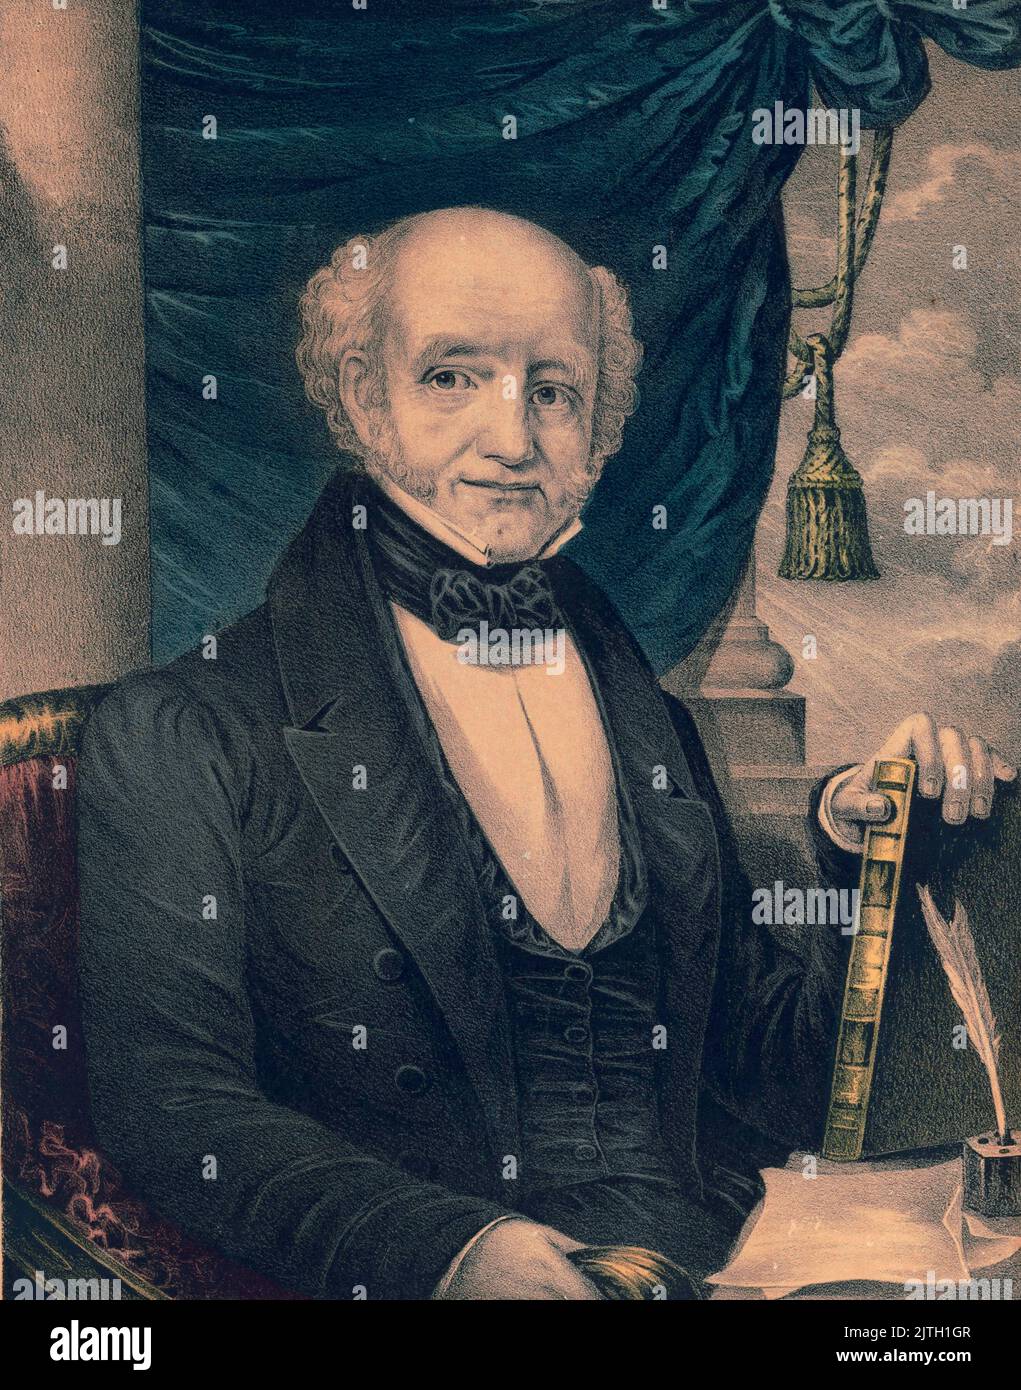 Un ritratto del presidente Martin van Buren. Martin van Buren è stato l'ottavo presidente degli Stati Uniti. Foto Stock